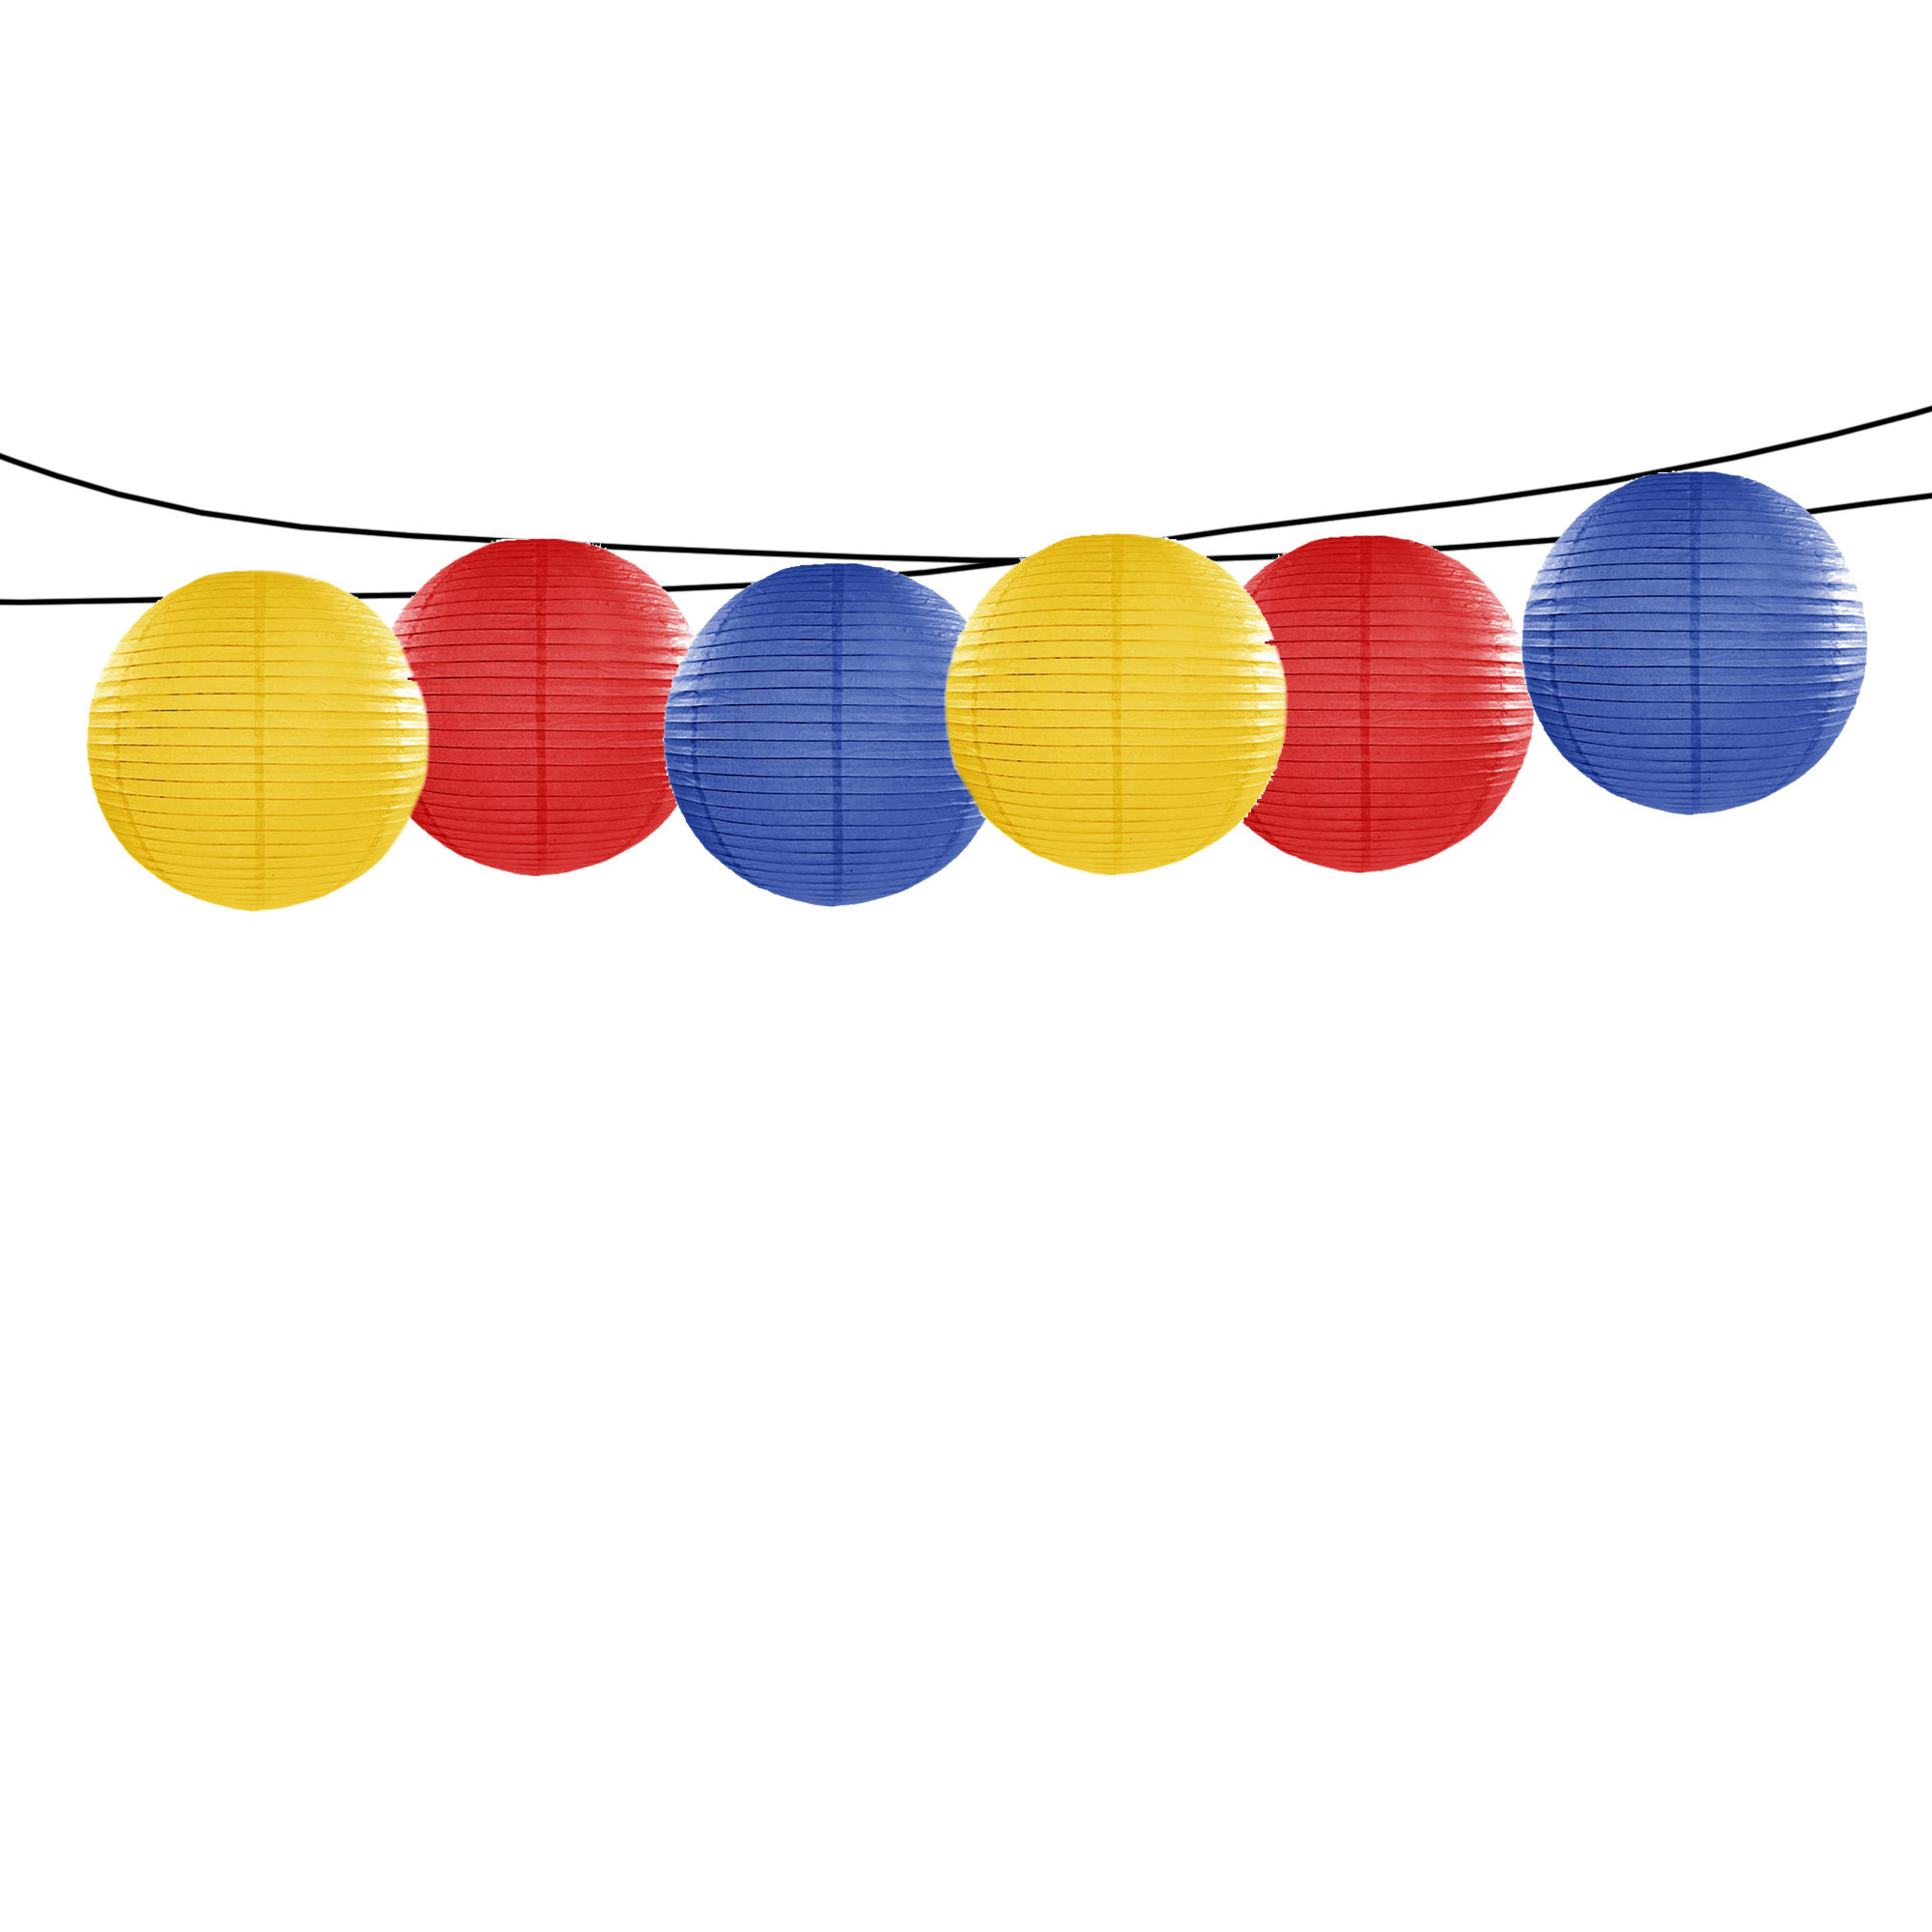 Feest-tuin versiering 6x stuks luxe bol-vorm lampionnen blauw-geel-rood dia 35 cm